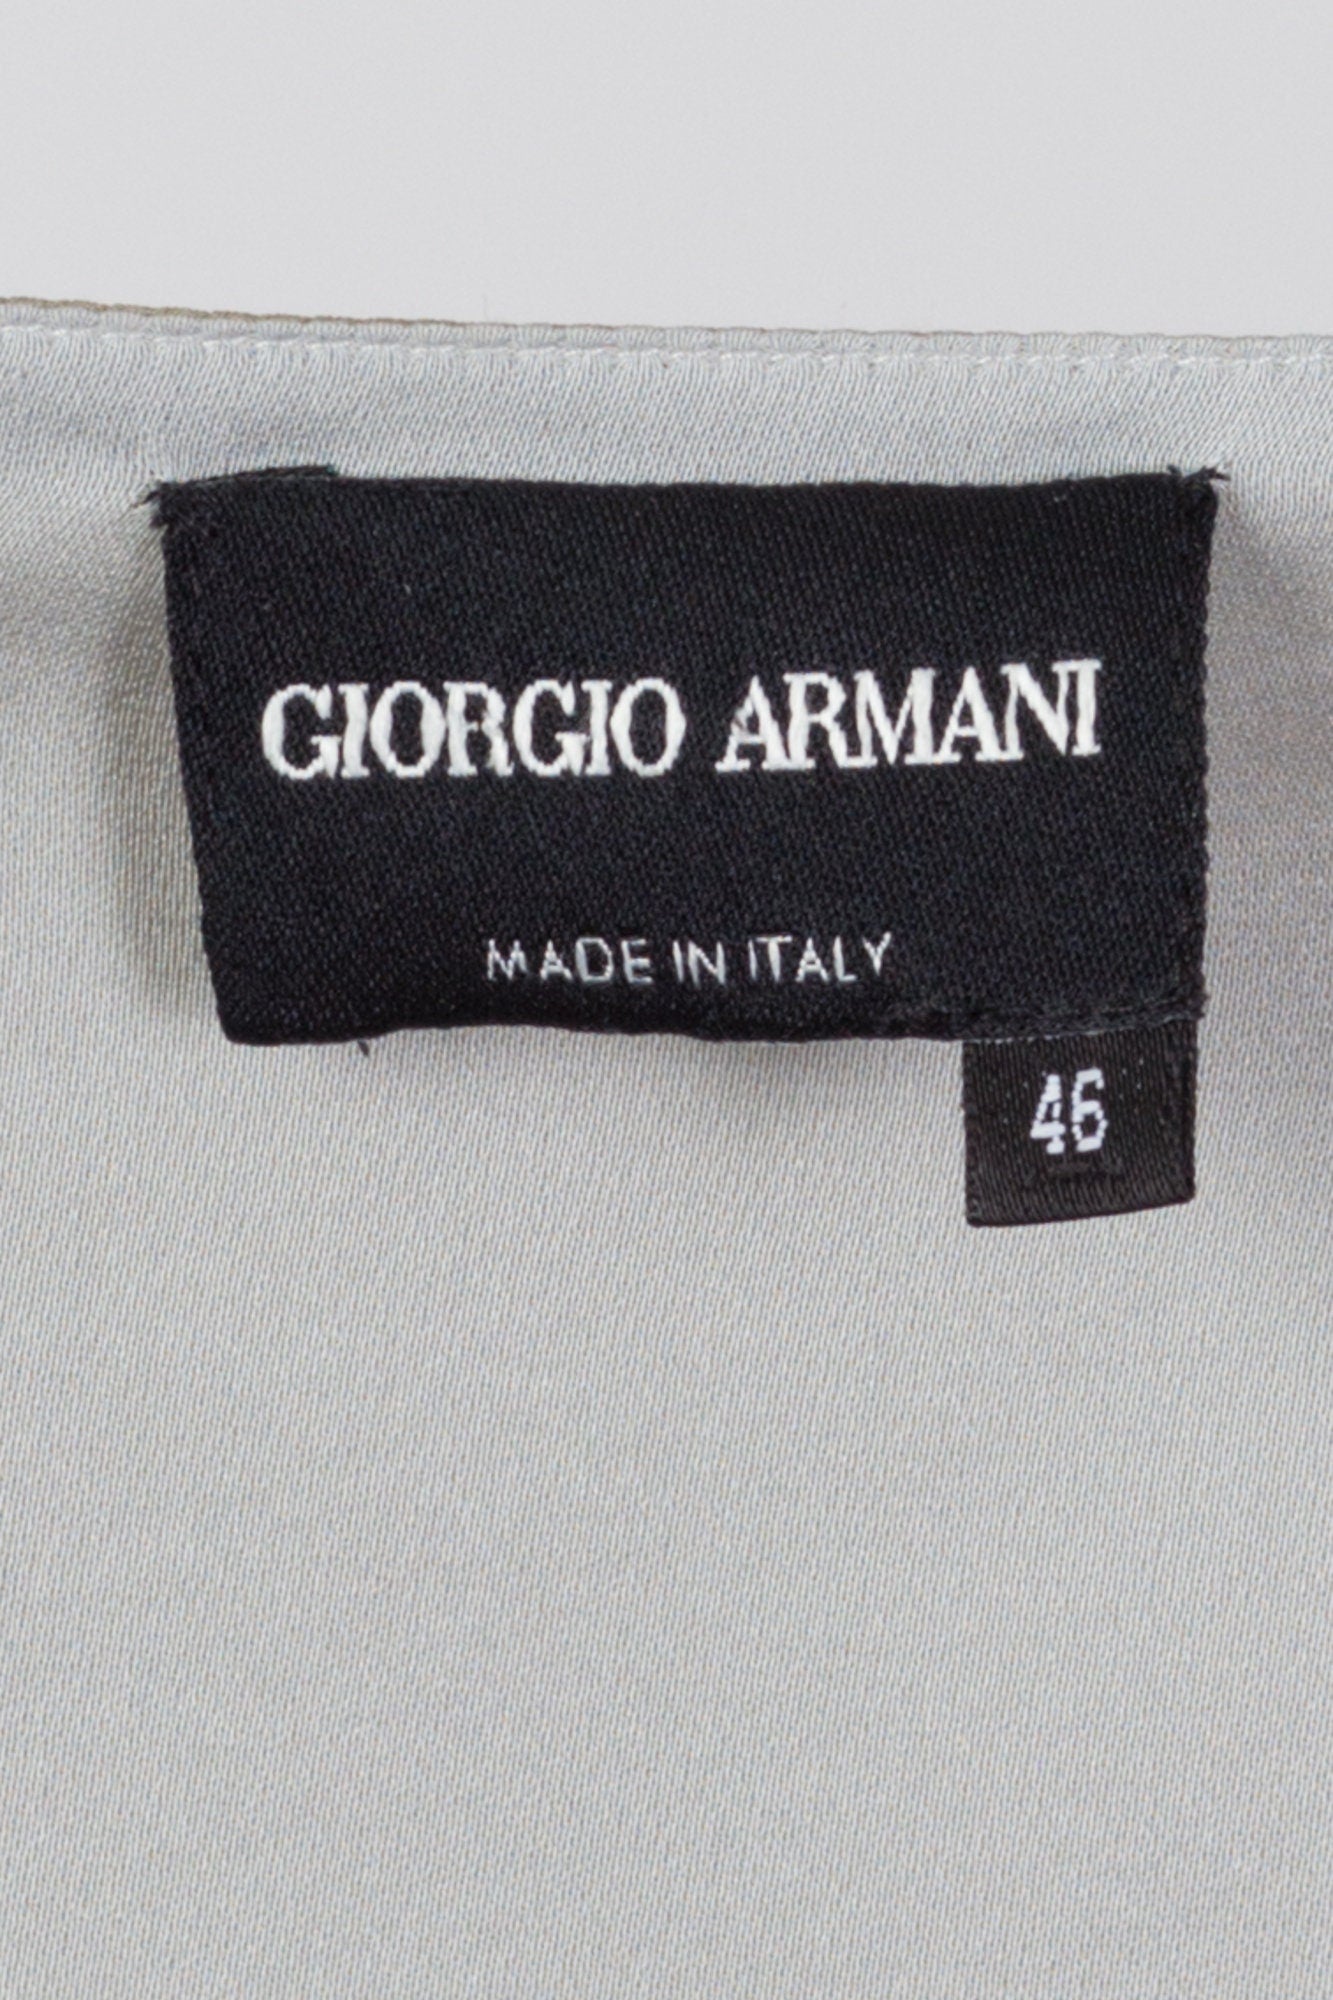 Vintage Giorgio Armani Silk Two Tone Sleeveless Top - Large 